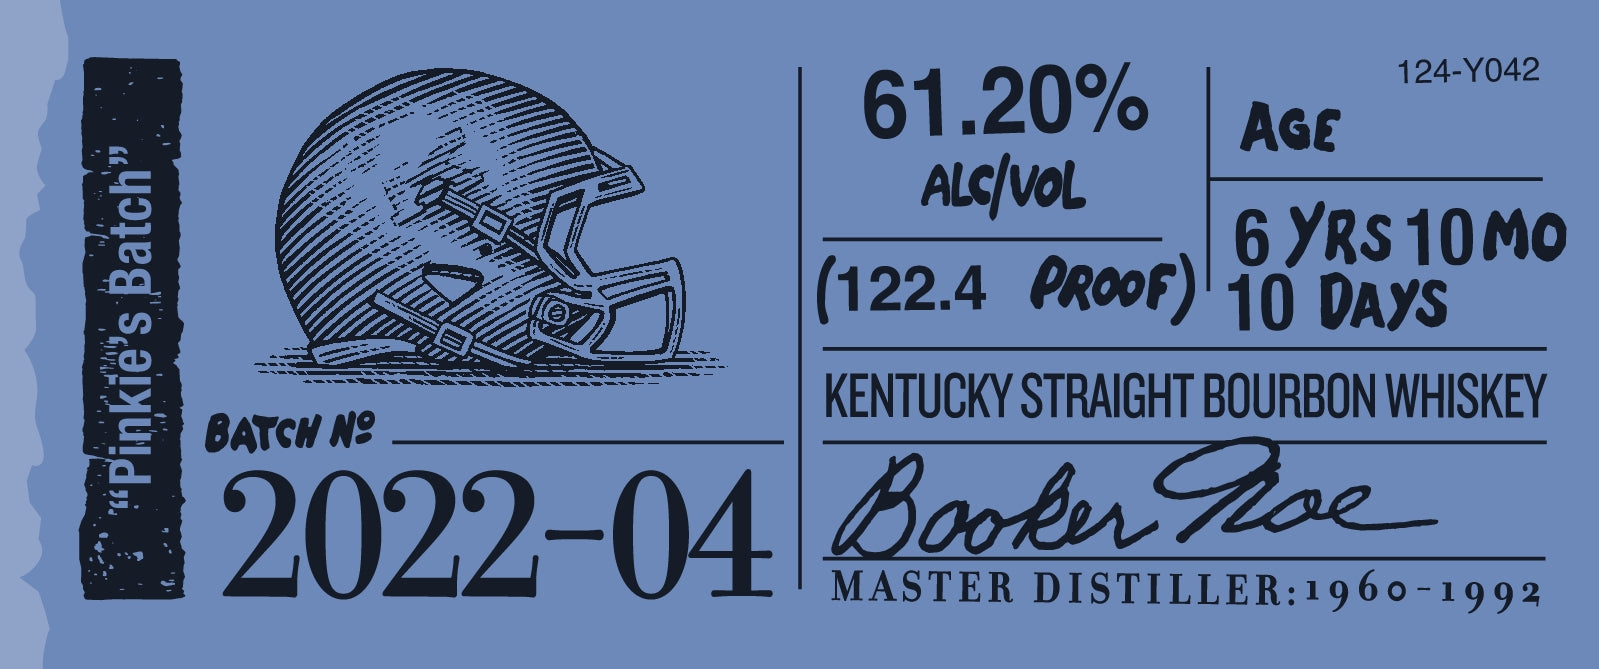 Booker's 2022-04 "Pinkie's Batch" Bourbon